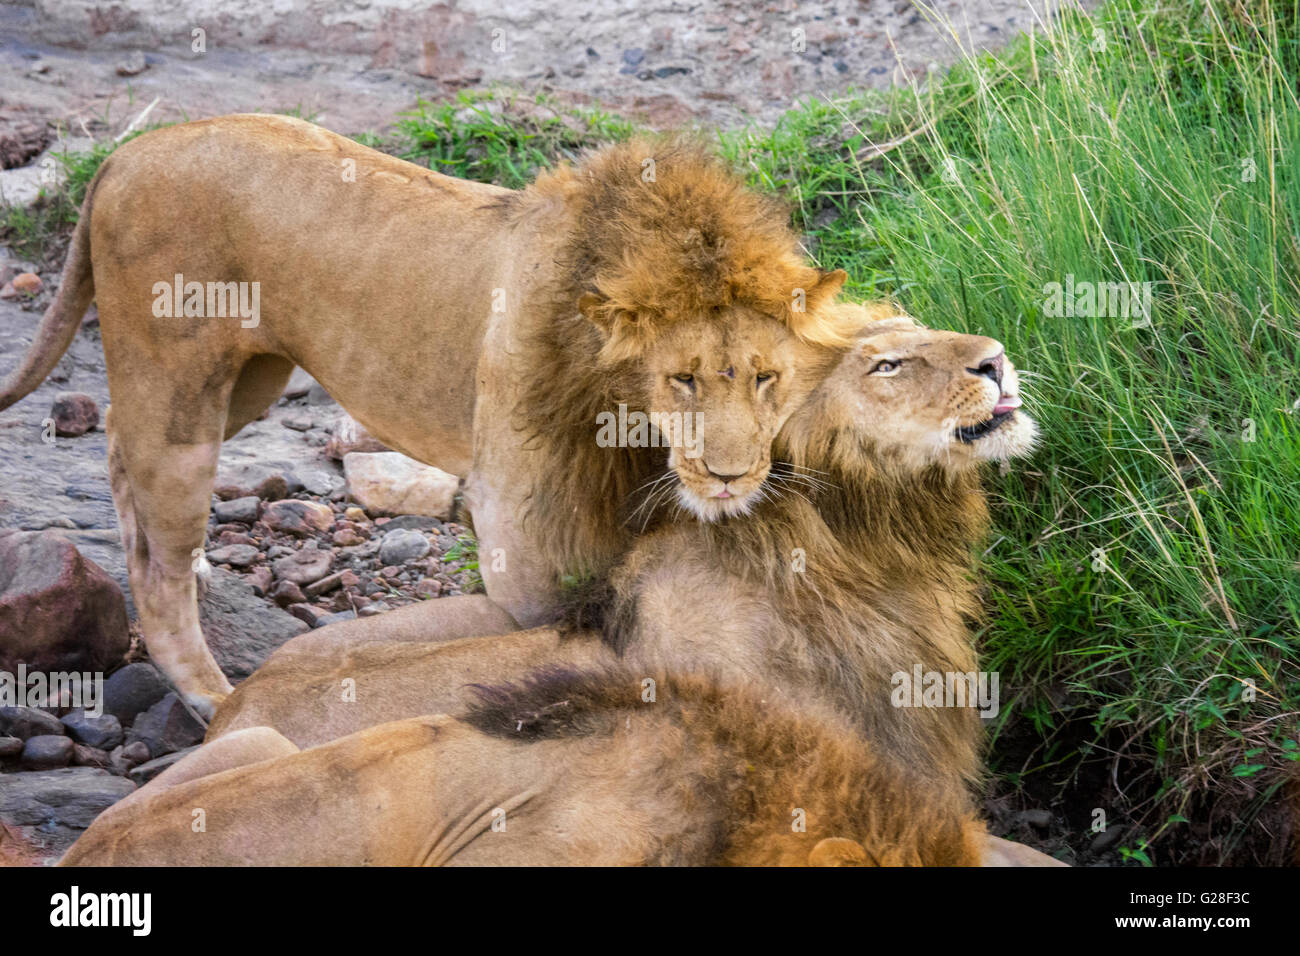 Les Lions de l'Afrique de l'homme, Panthera leo, montrer de l'affection, Masai Mara National Reserve, Kenya, Africa Banque D'Images